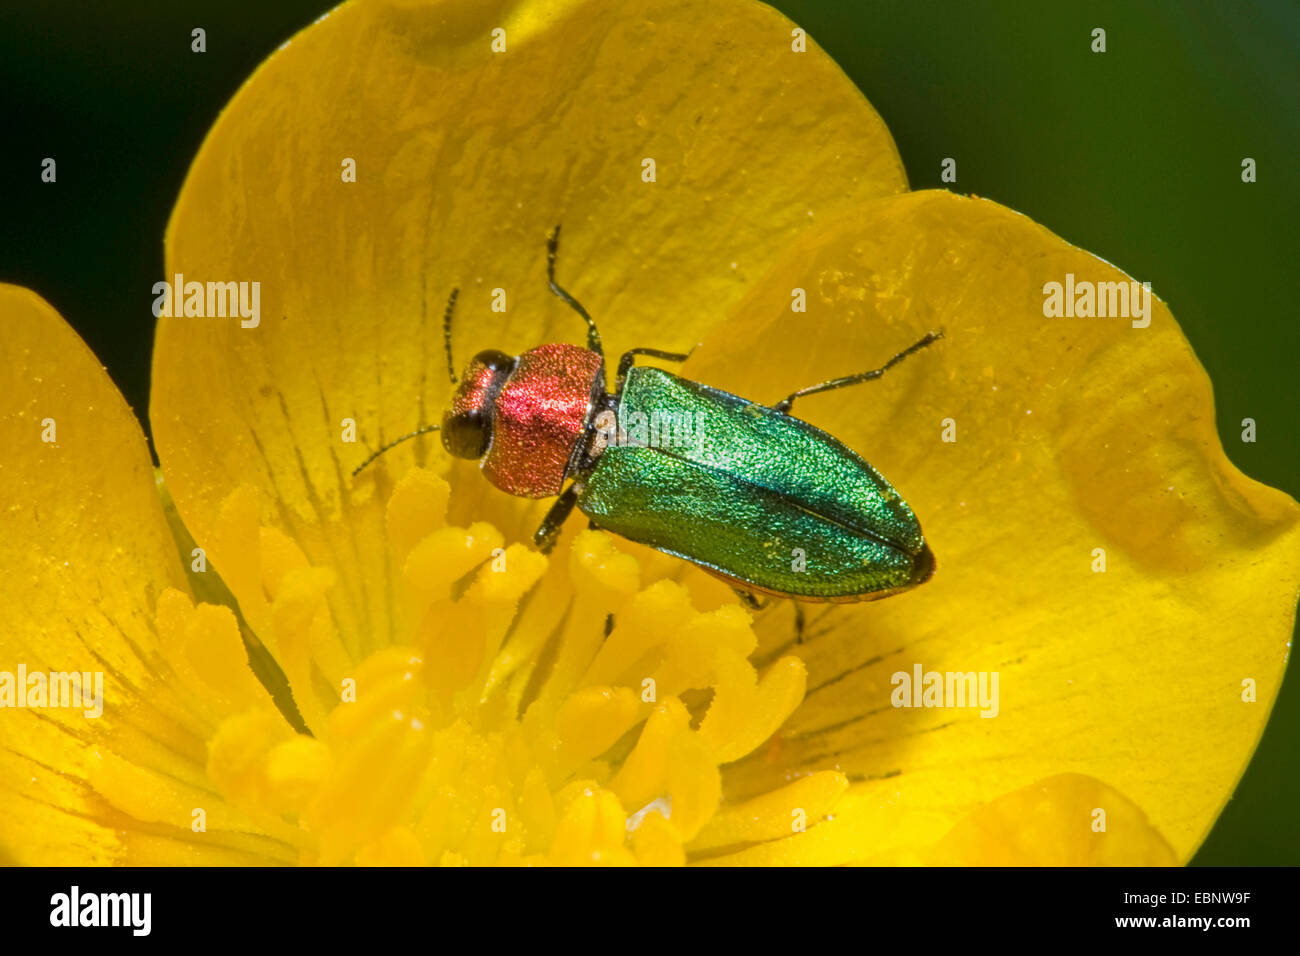 Gioiello beetle, METALLIZZATE LEGNO-noioso beetle (Anthaxia nitidula), su un fiore giallo, Germania Foto Stock